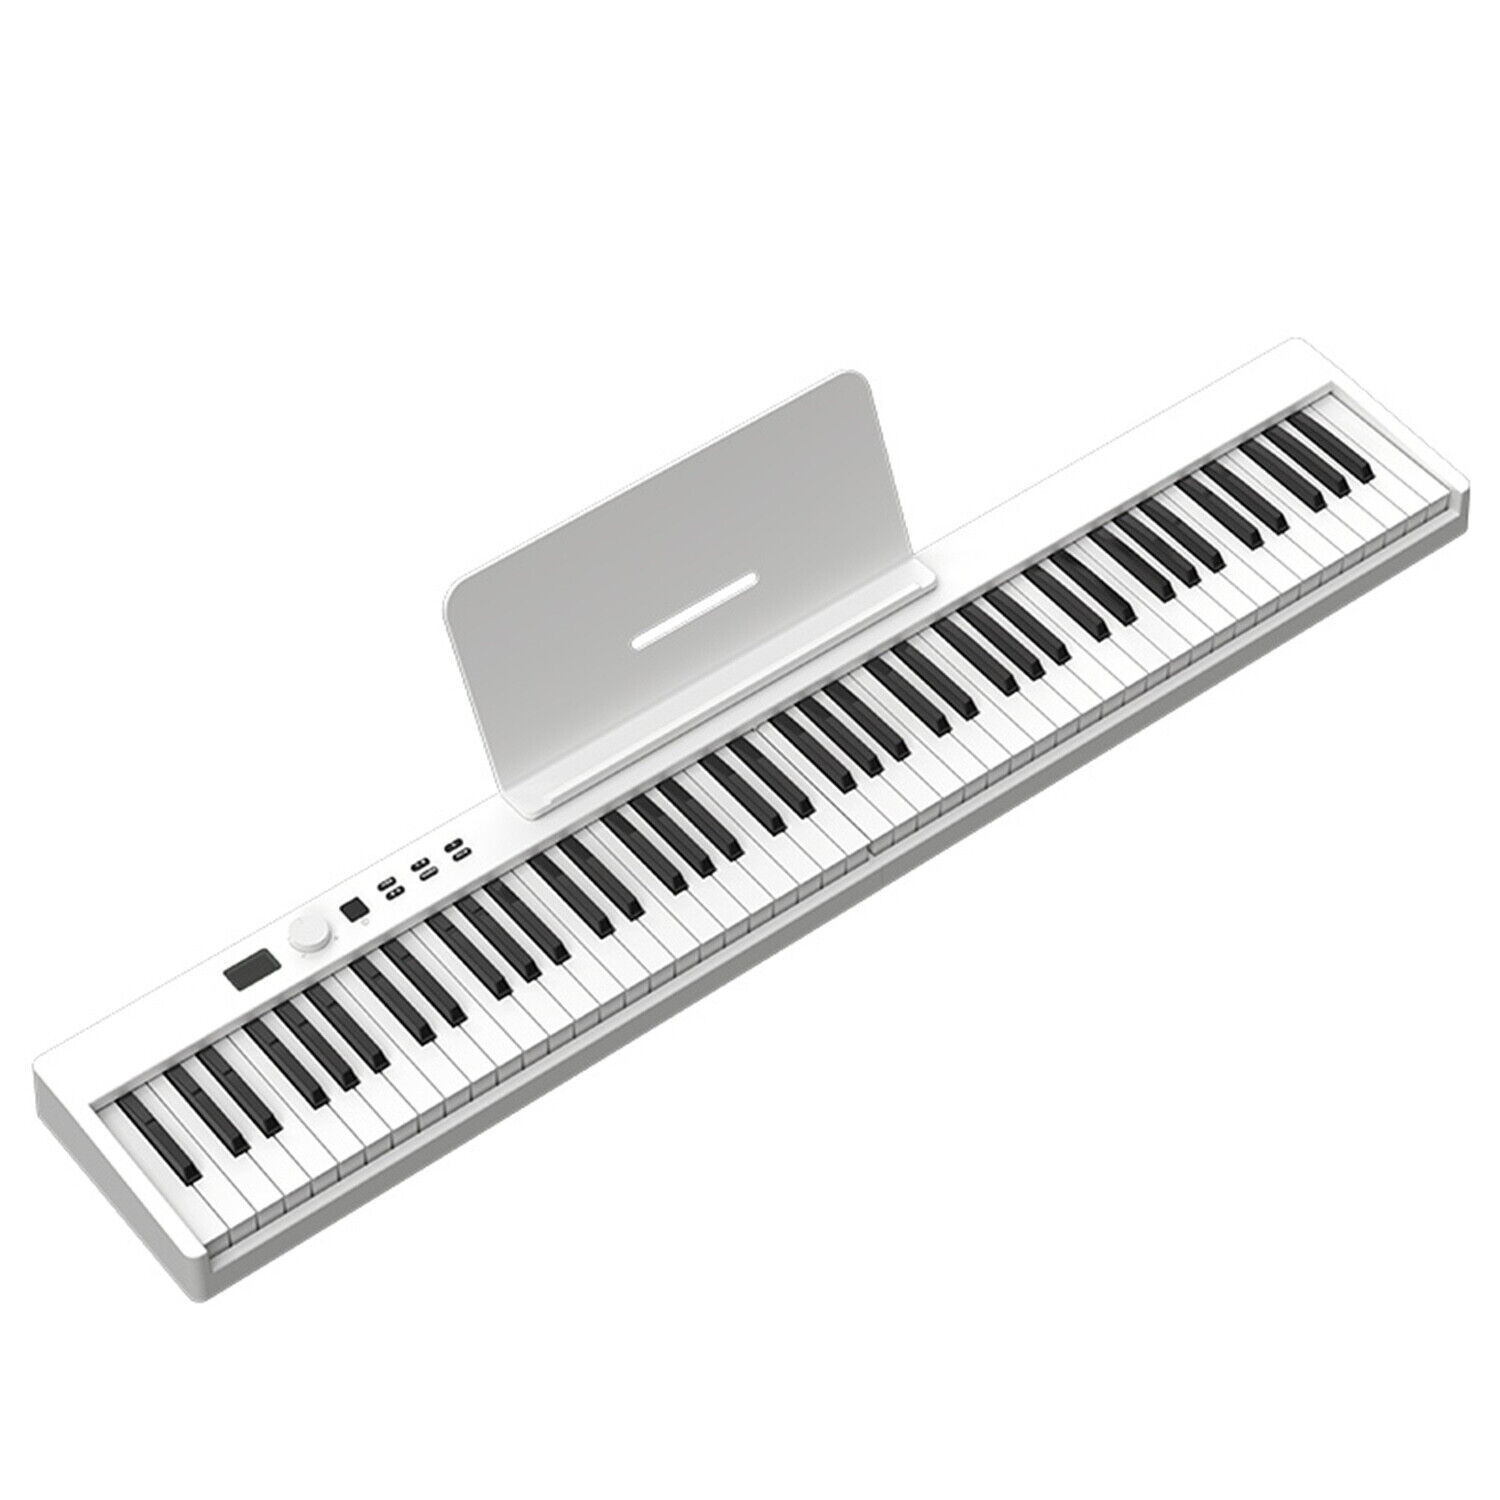 ارزان ترین قیمت پیانو دیجیتال مدل Pj88c 9480